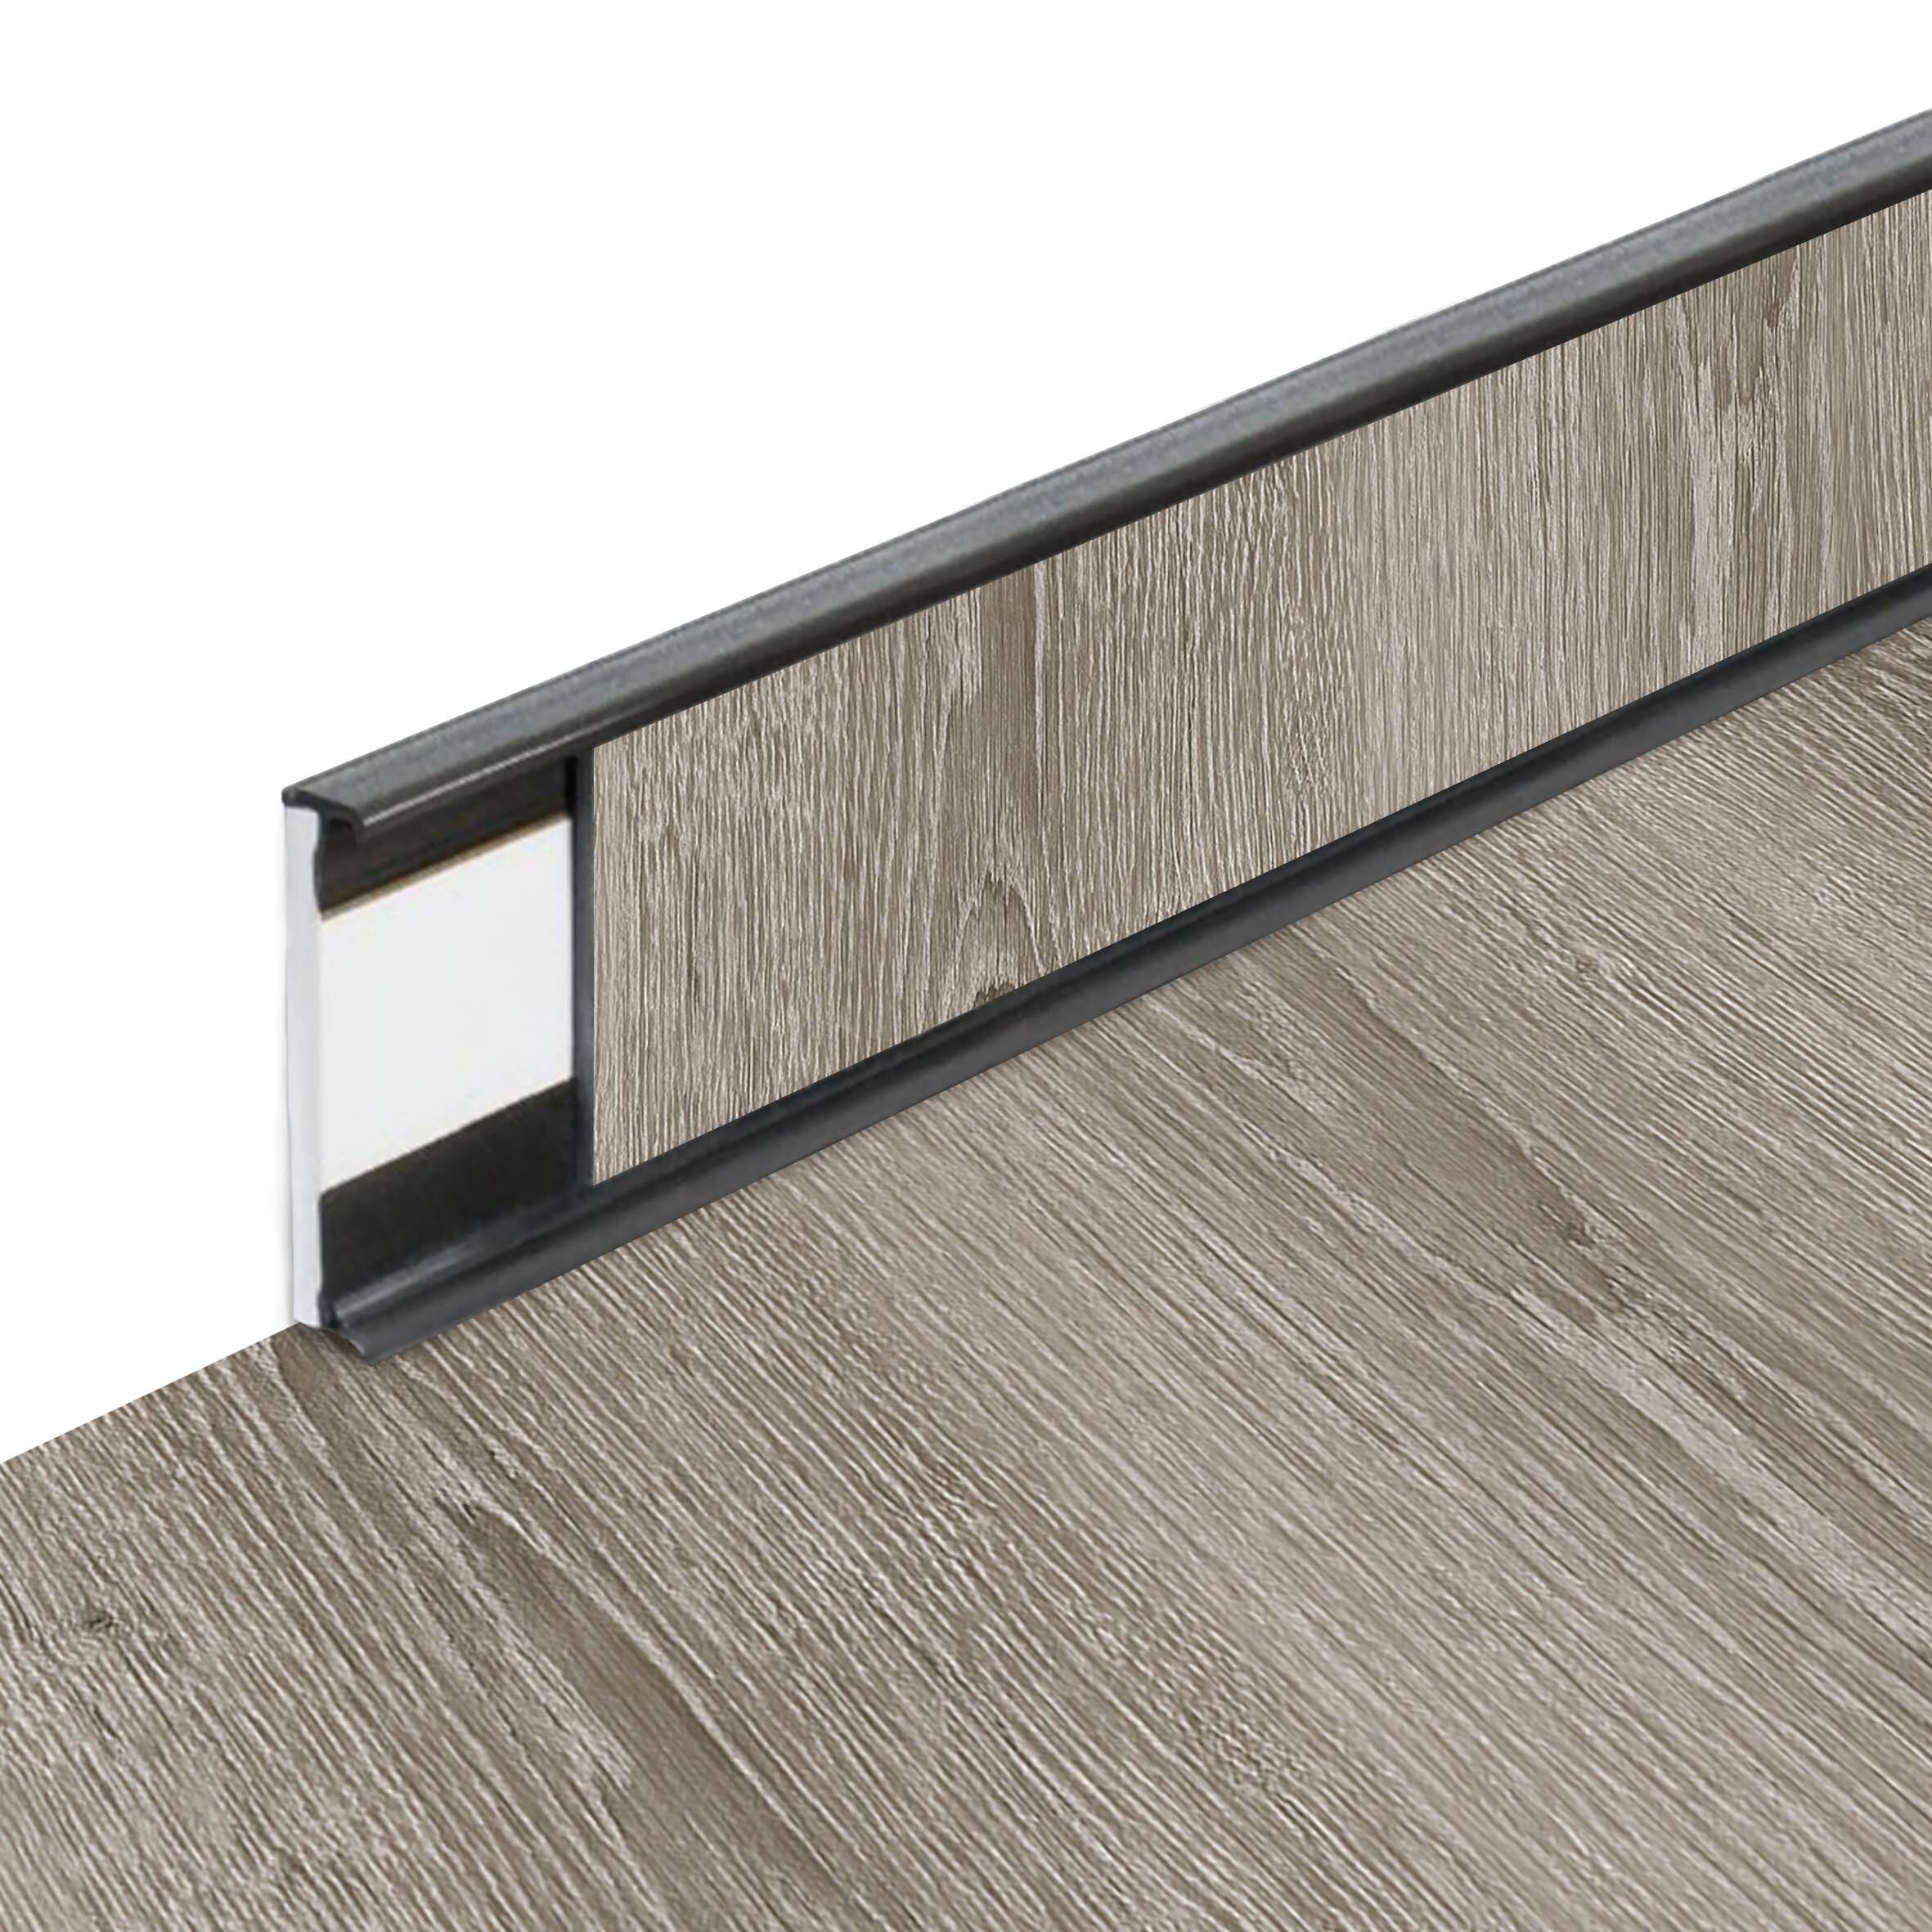 PVC vinylová soklová podlahová lišta Fortelock Business Scandinavian Oak W002 Graphite - délka 200 cm, výška 5,8 cm, tloušťka 1,2 cm